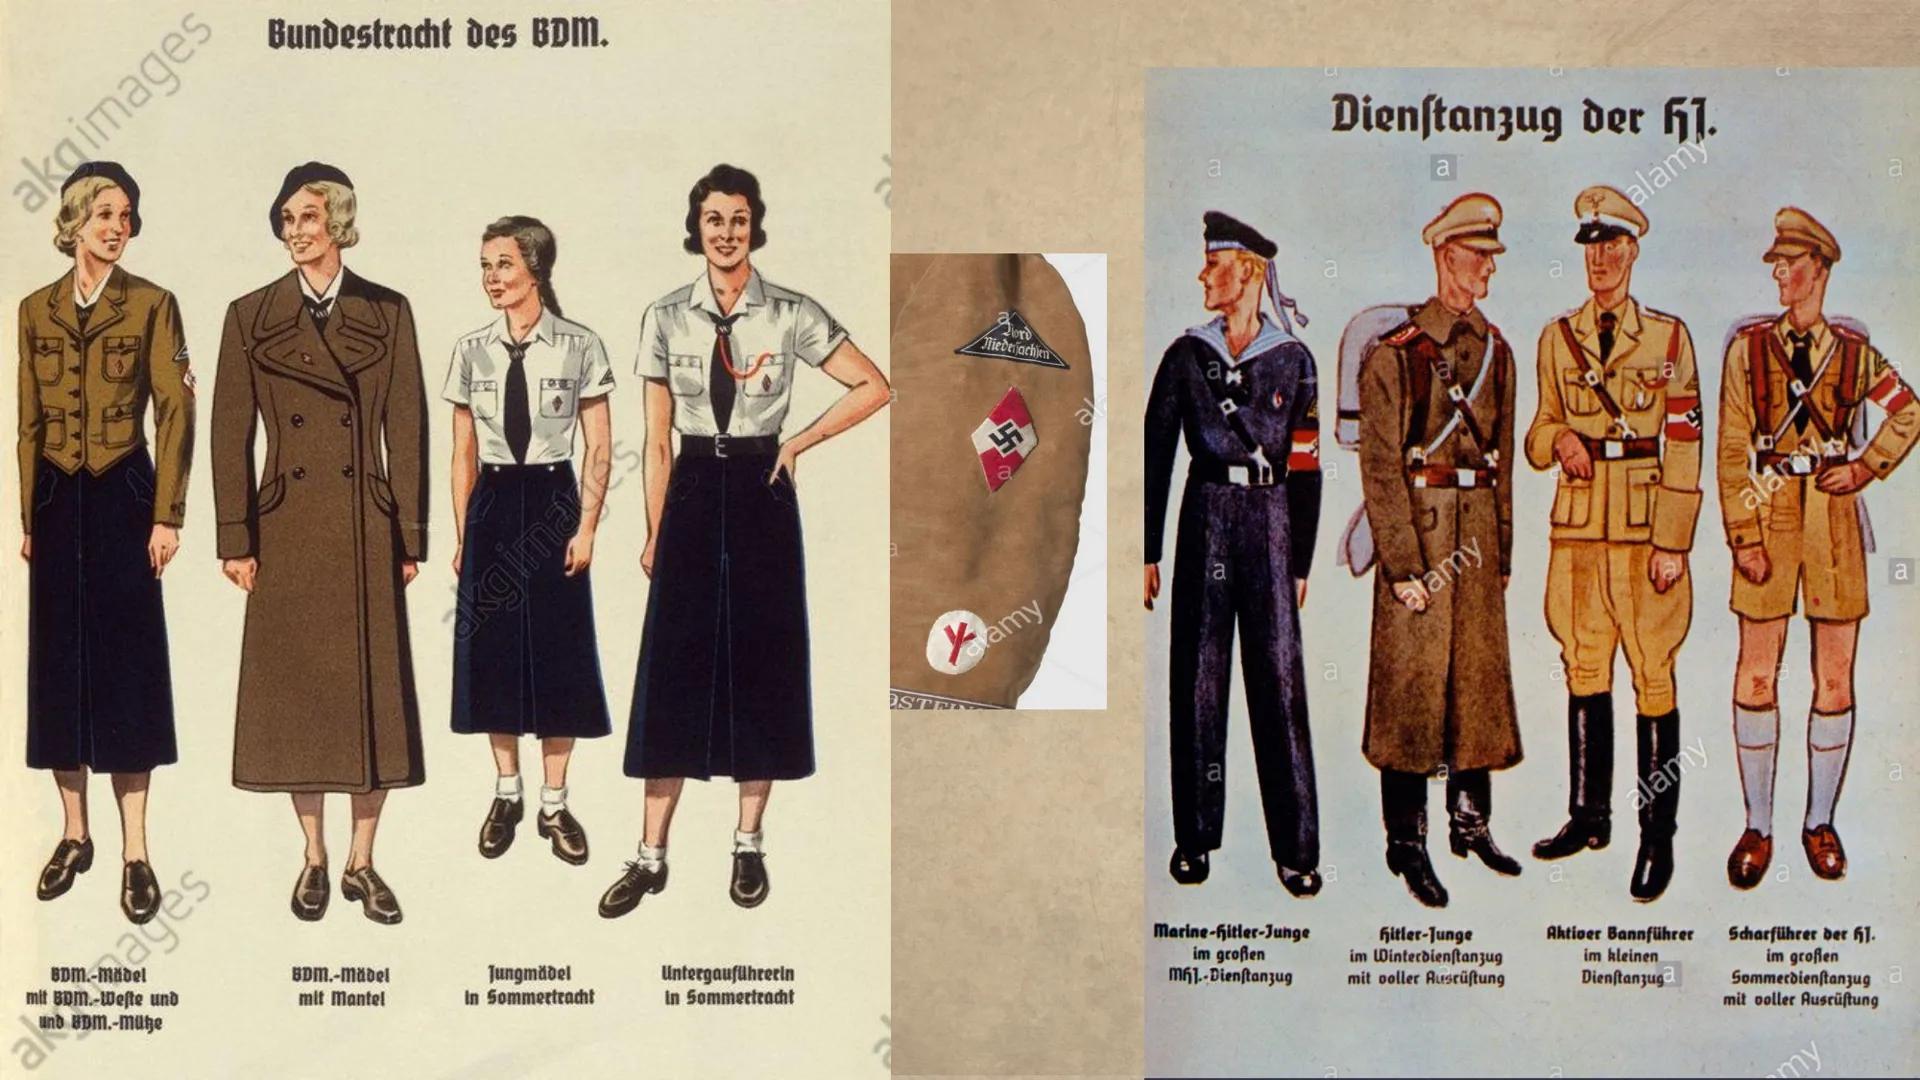 Hitler-Jugend &
Bund-Deutscher-Mädchen
von Jana, Lea, Sarah, Joline, Fabienne und
Johanna 11
Der
01
02 BDM und HJ
Reichsjugendführer
2
+4
D
